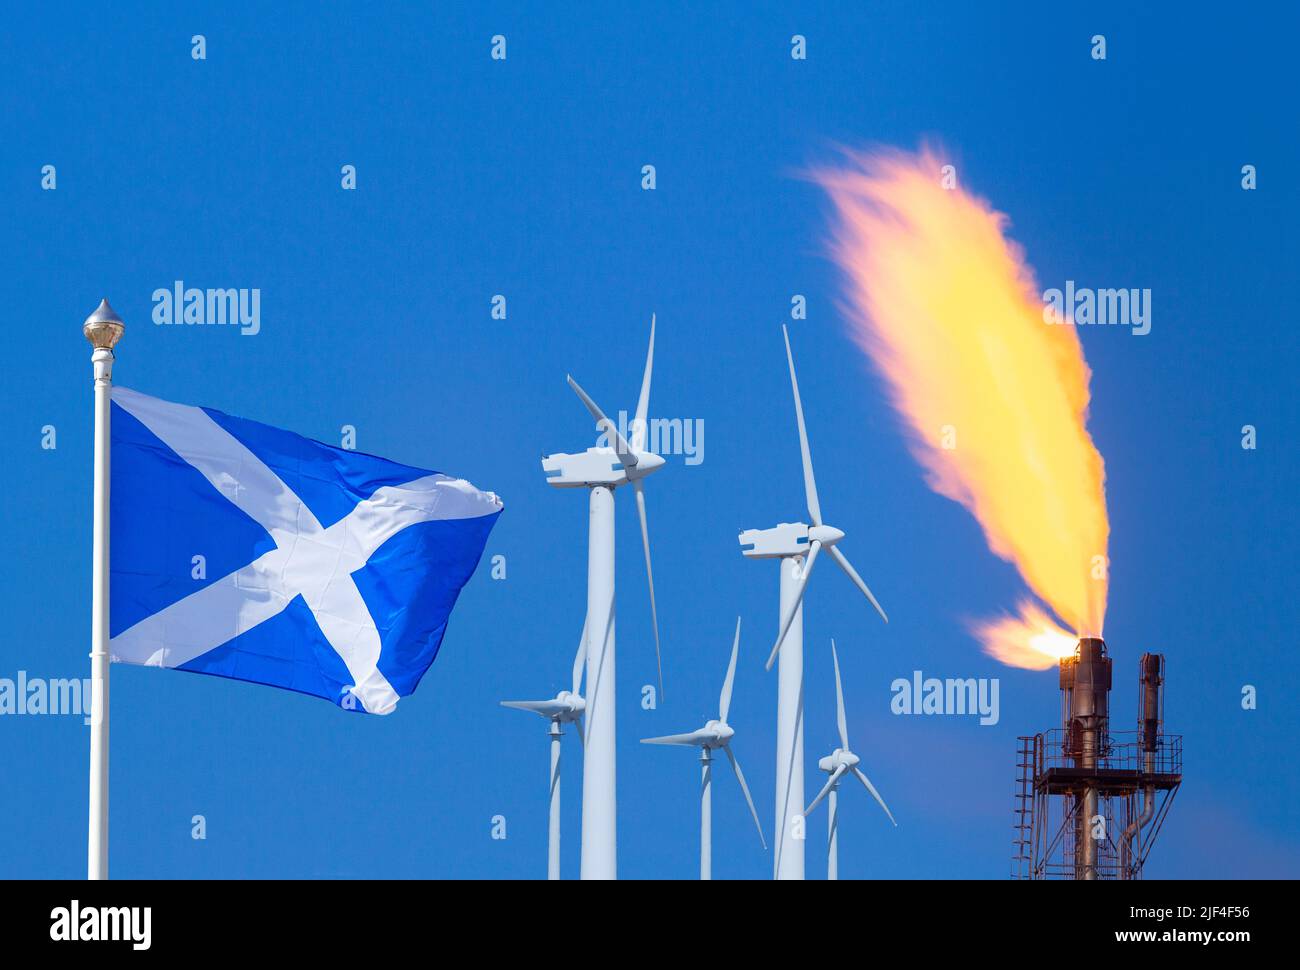 Flagge Schottlands mit Windturbinen und Gasanlage, Flare Stack/Schornstein. Erneuerbare saubere Energie, fossile Brennstoffe, Nordseegas, Unabhängigkeit... Konzept Stockfoto